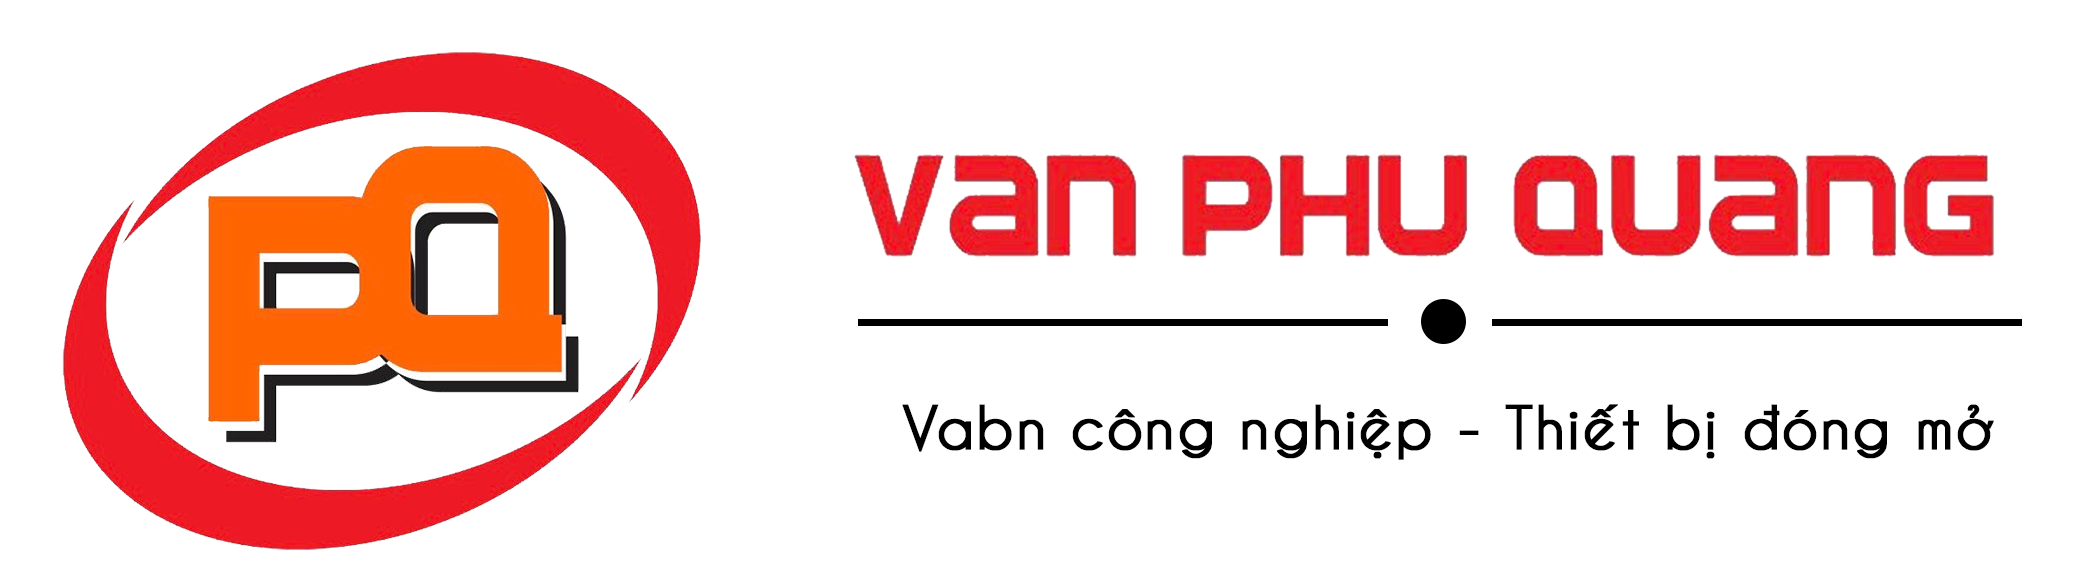 Mua van bi inox khí nén chính hãng tại Phú Quang